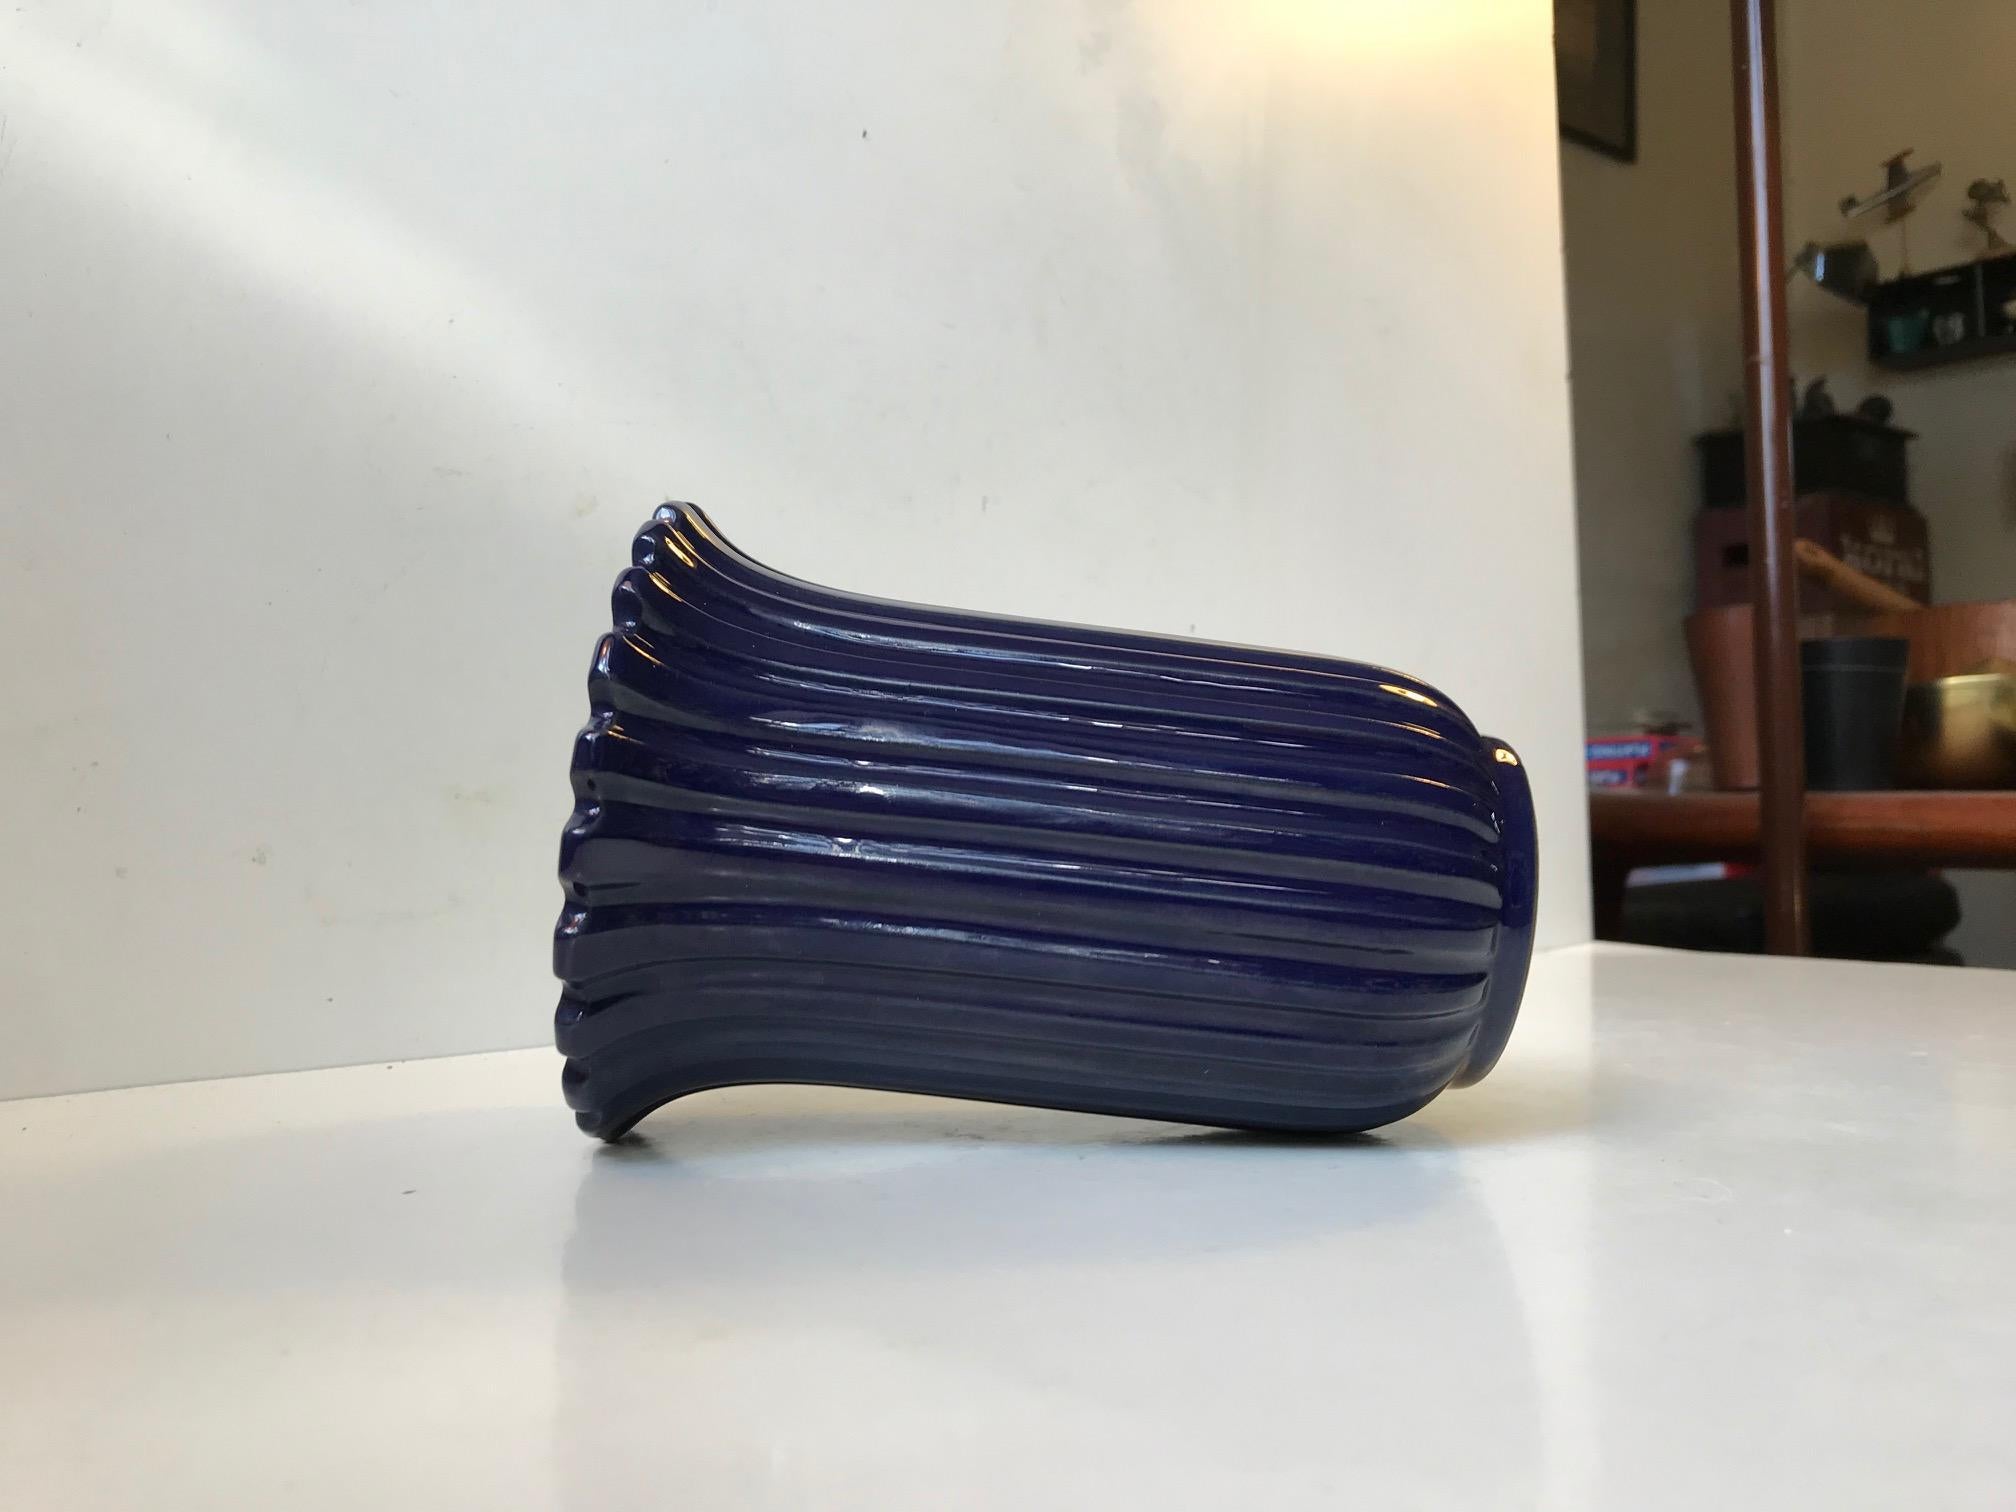 Vase en céramique de style Art déco des années 1970. Corpus cannelé entièrement vitrifié en bleu foncé. Cette couleur est de loin la plus rare. Il a été conçu par Eslau au Danemark et fabriqué dans leur propre studio dans les années 1970. Ce style a